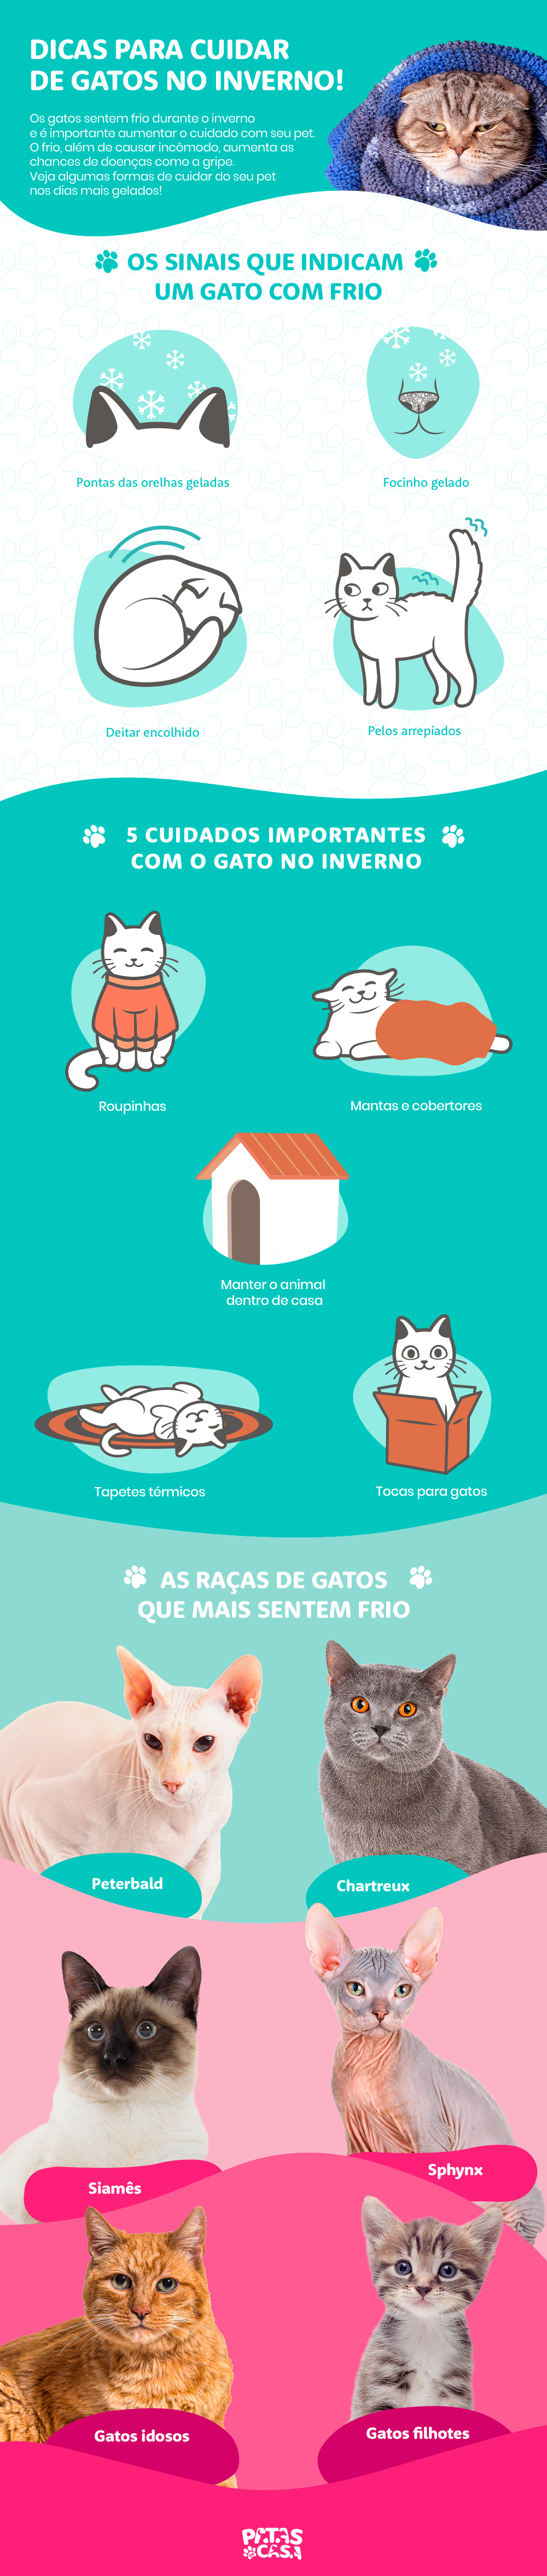 infográfico sobre cuidados com gato no inverno